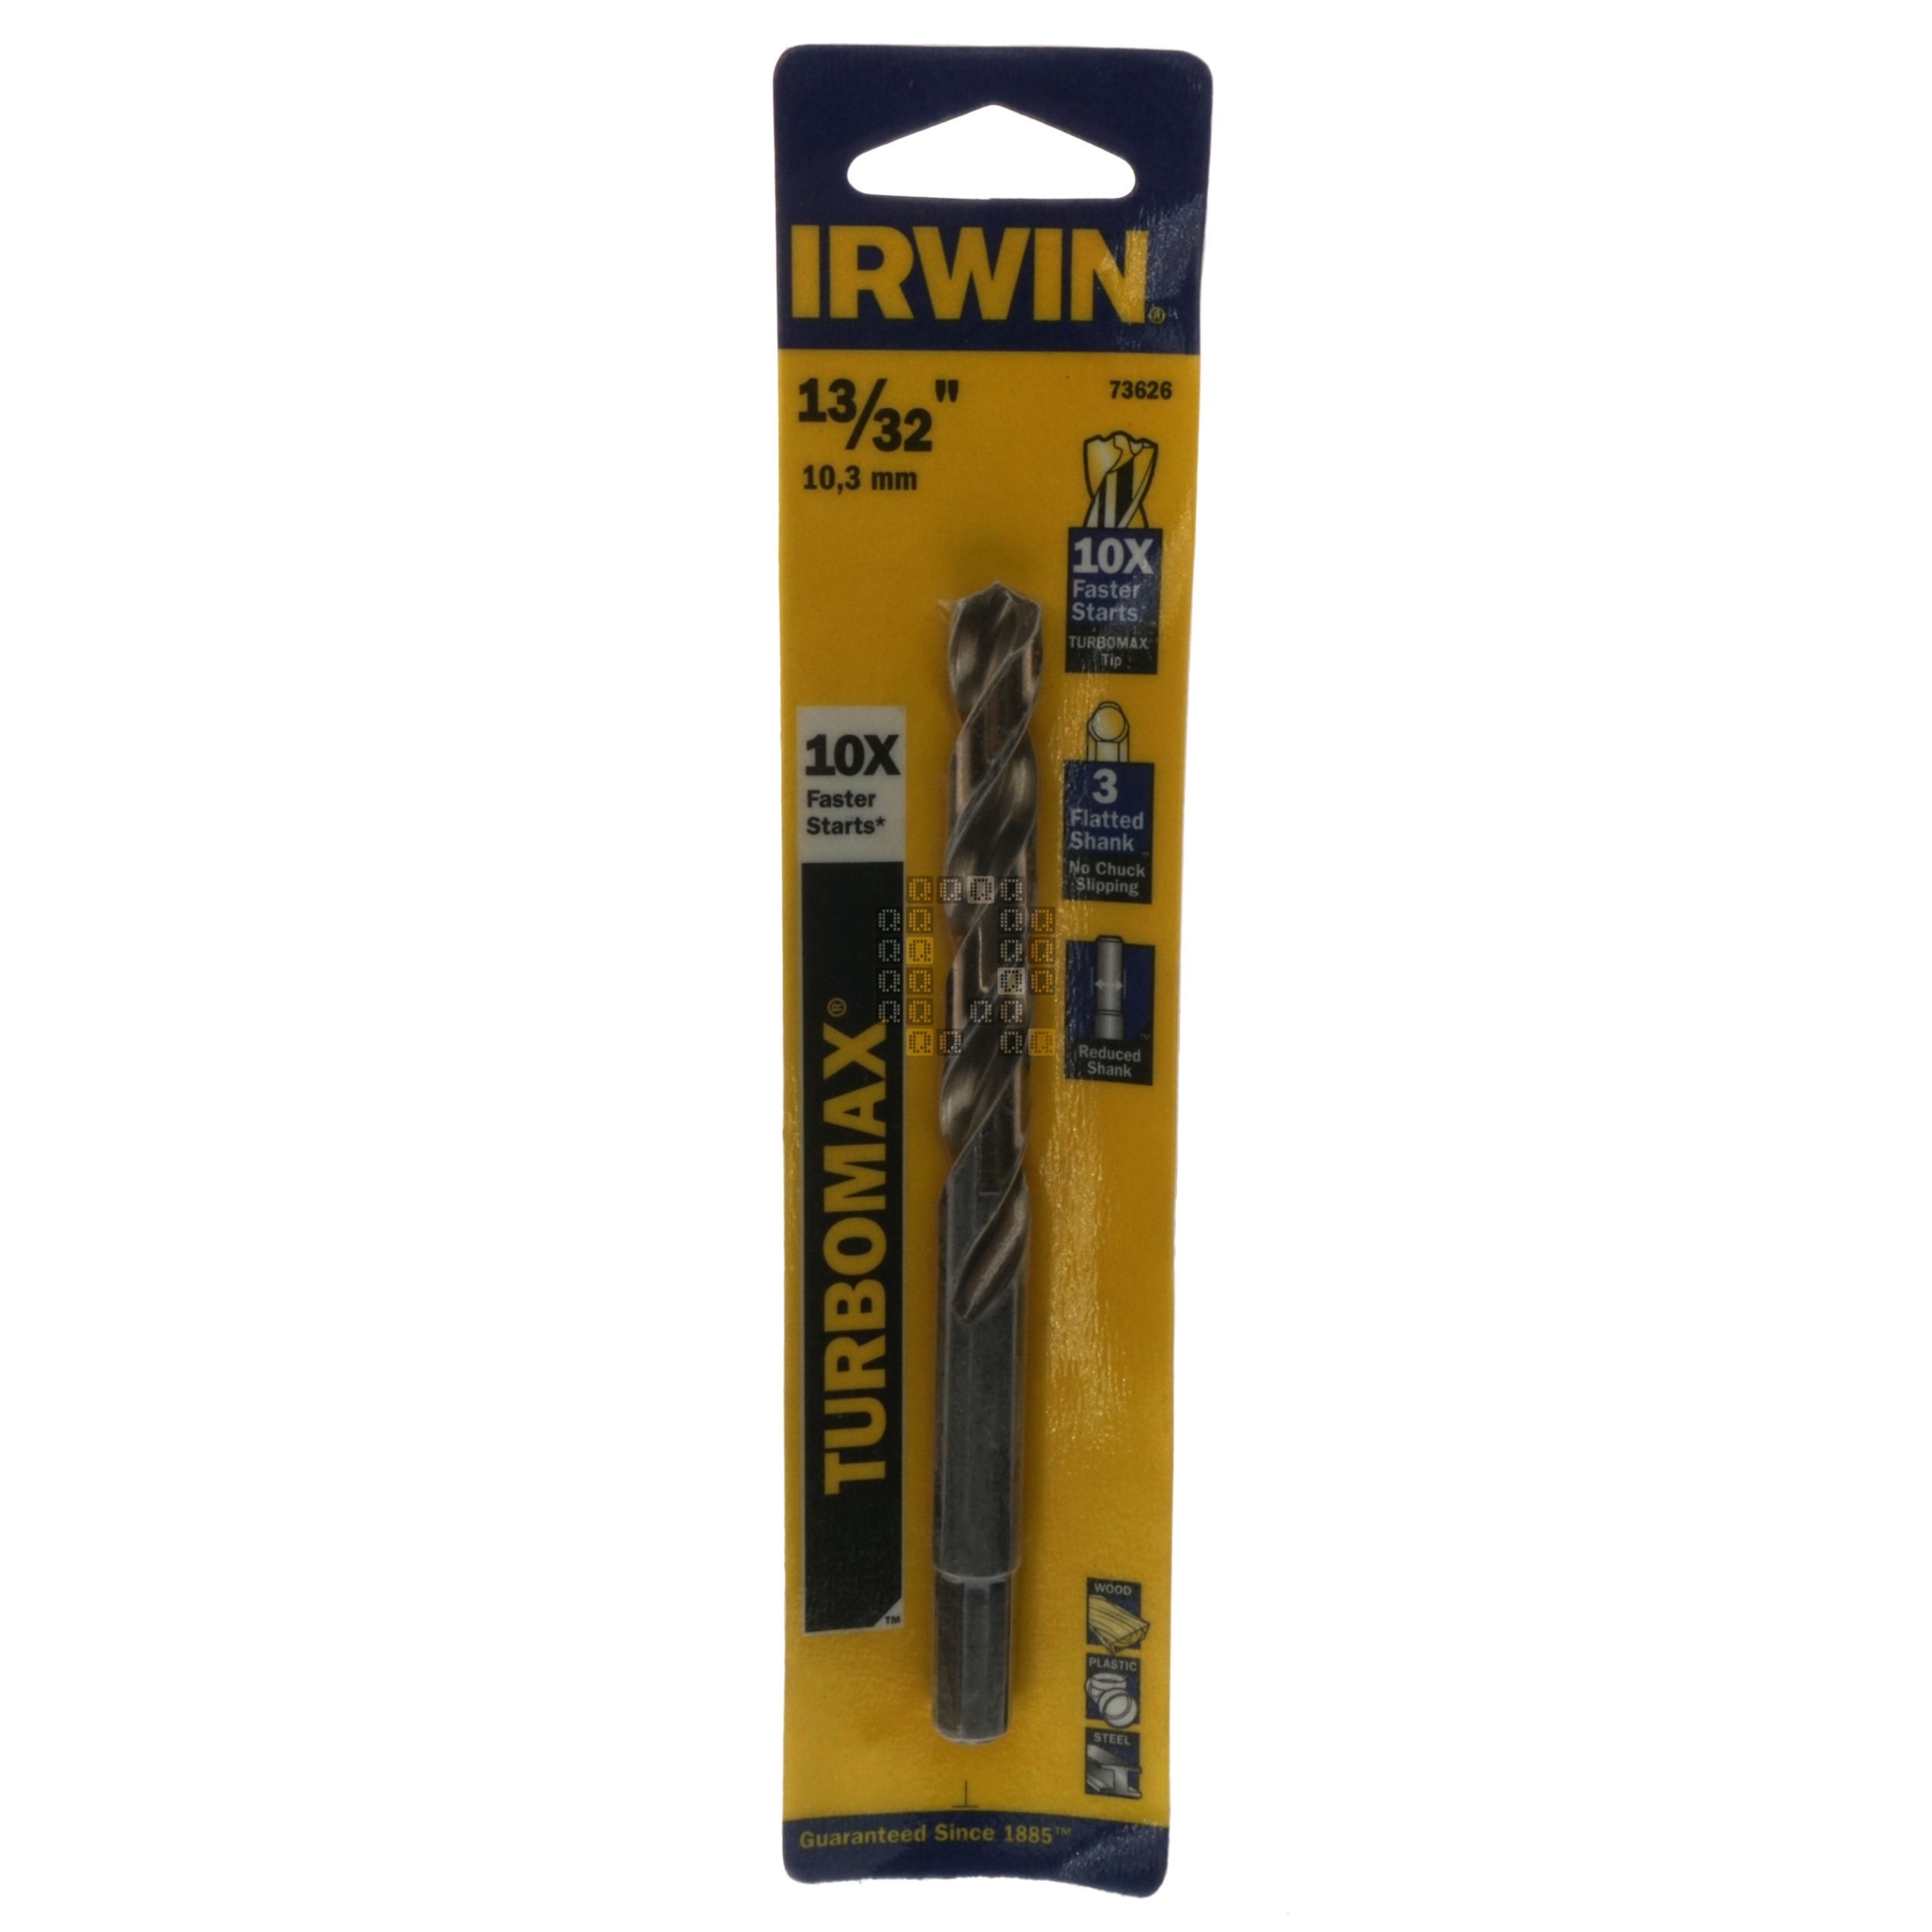 Irwin Industrial Tools 73626 Turbomax 13/32" Drill Bit, 3/8" Reduced Shank